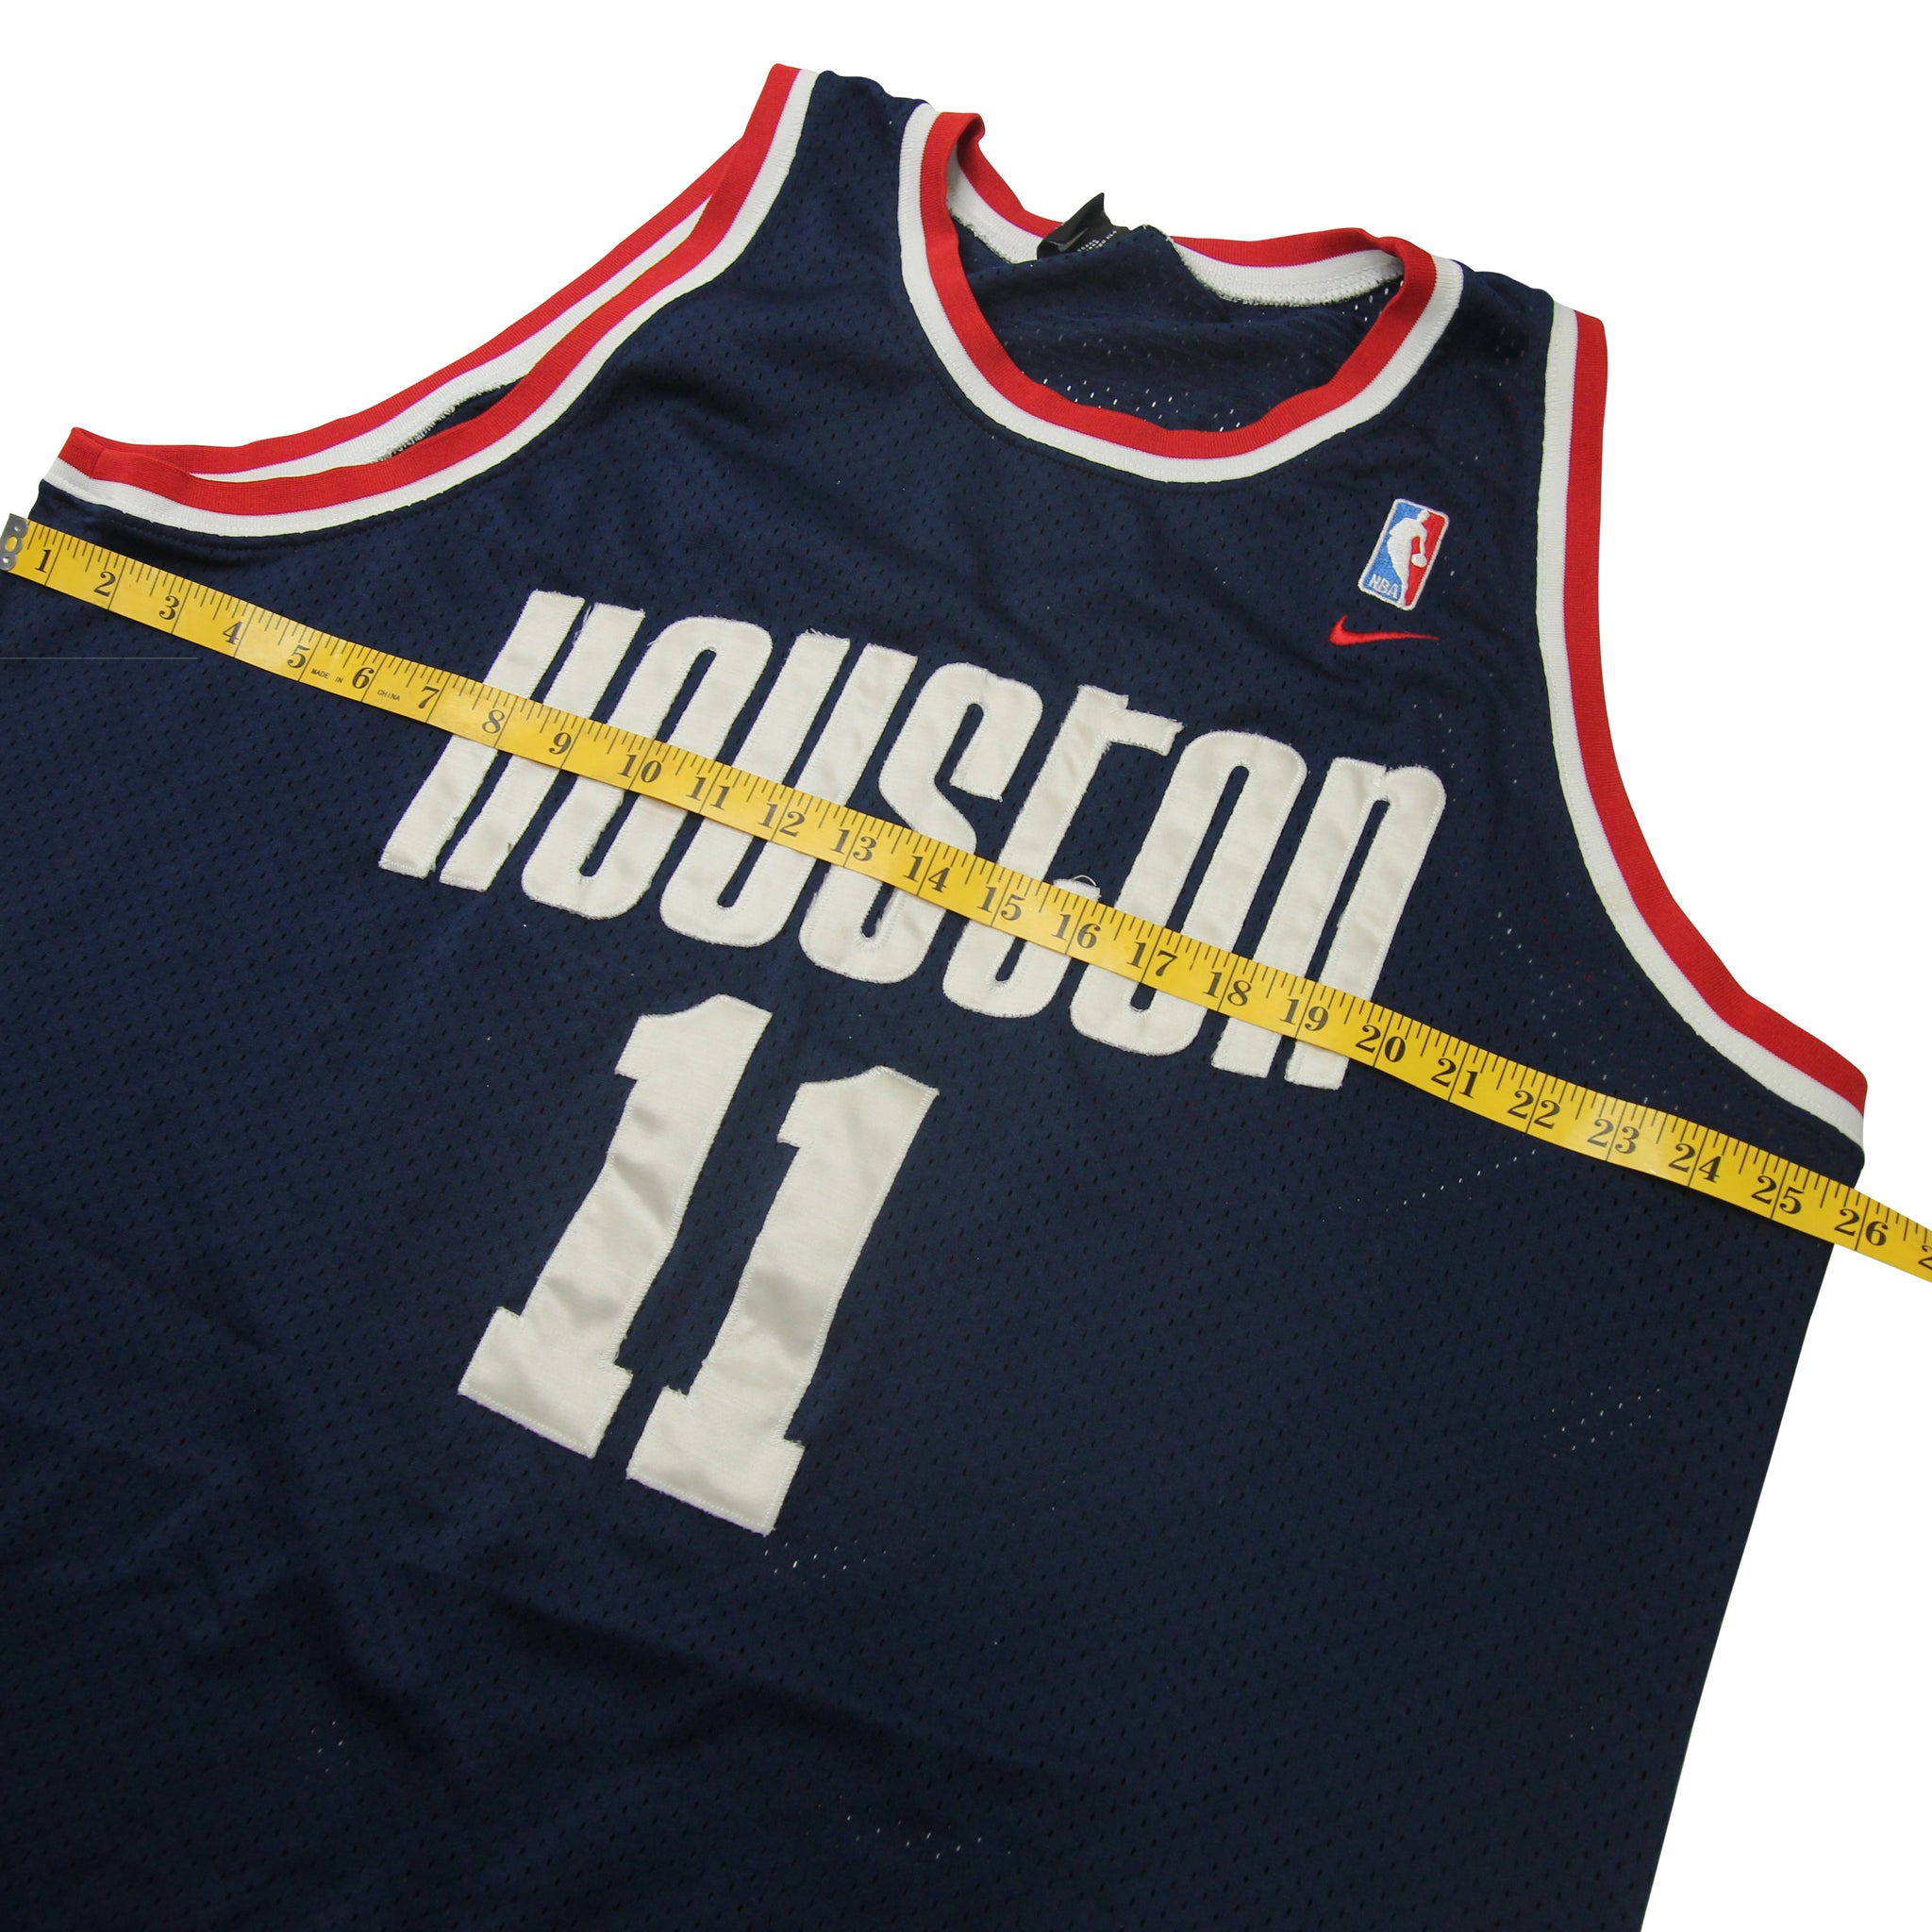 Nike Yao Ming #11 Houston Rockets NBA Basketball Jersey Size 2XL